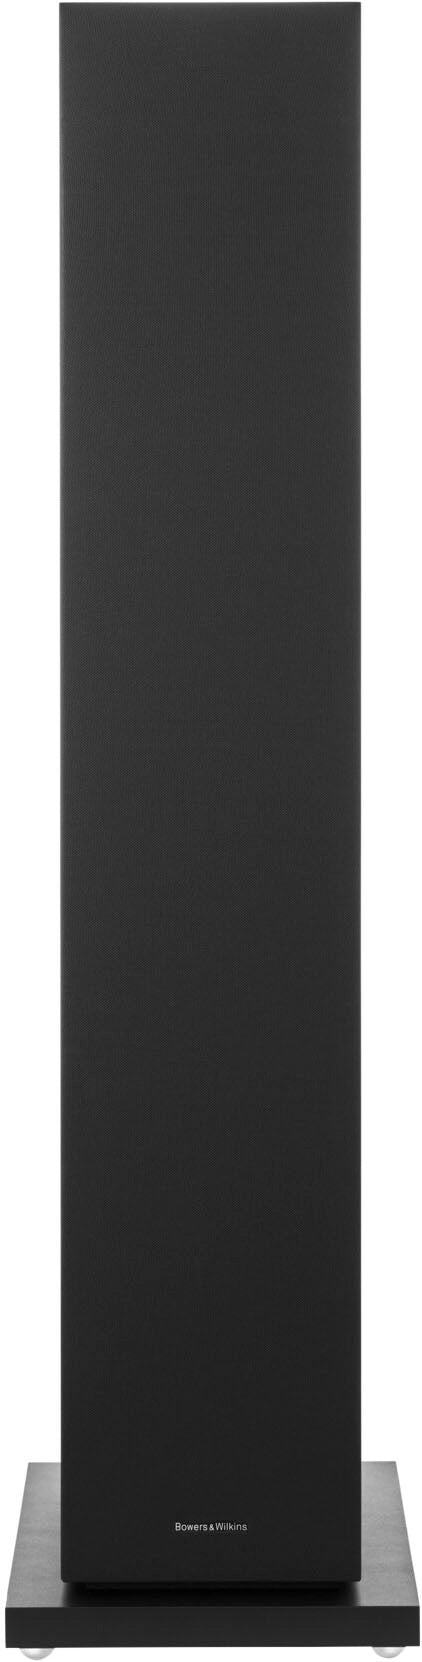 Bowers & Wilkins - 600 S3 Series 3-Way Floorstanding Loudspeaker (Each) - Black_3